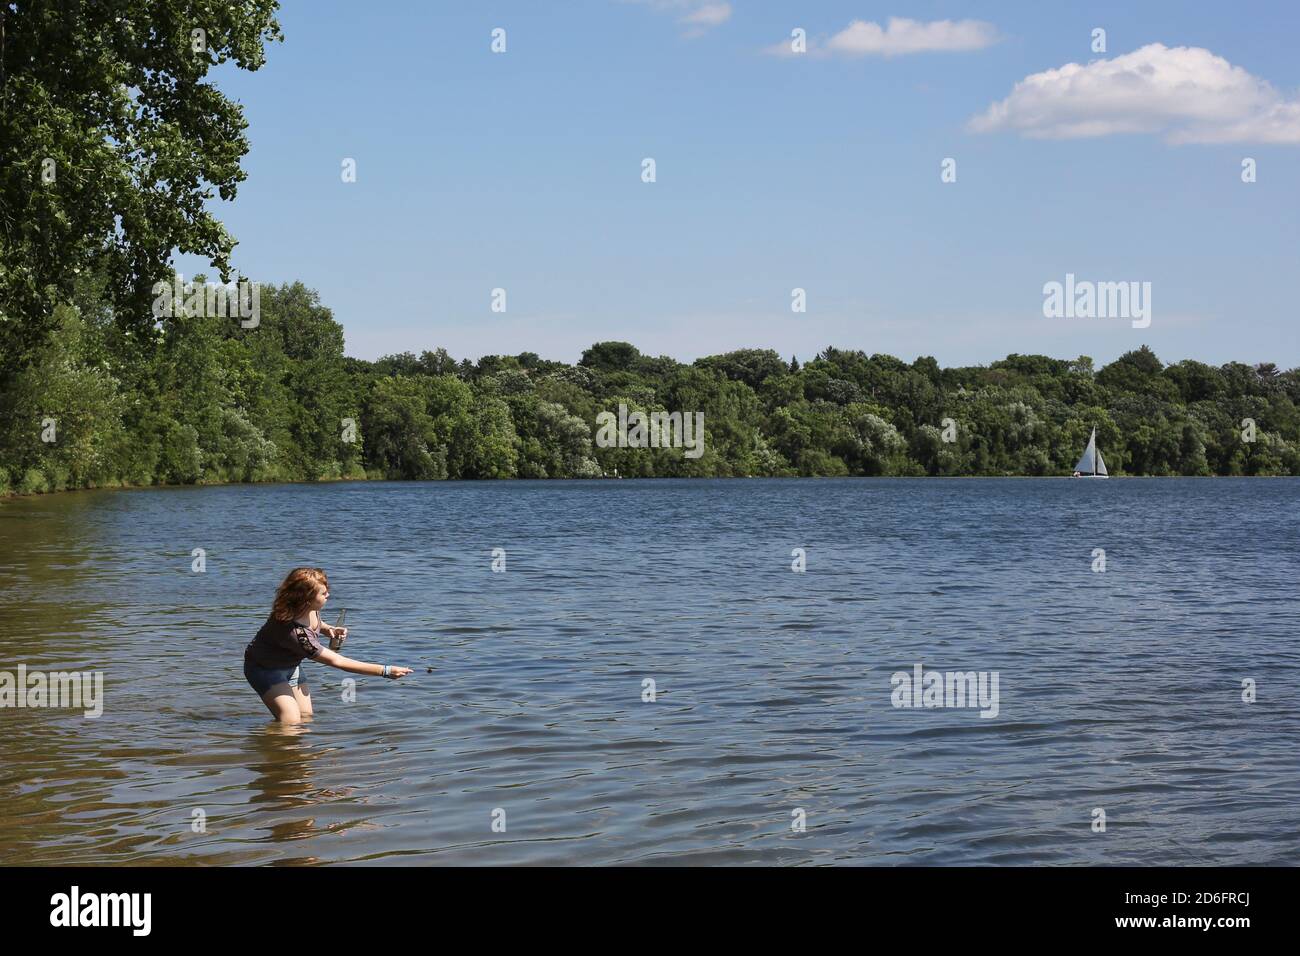 Ein jugendliches Mädchen, das in einem See steht und ein abgefülltes Getränk hält und einen Felsen überspringt. Stockfoto